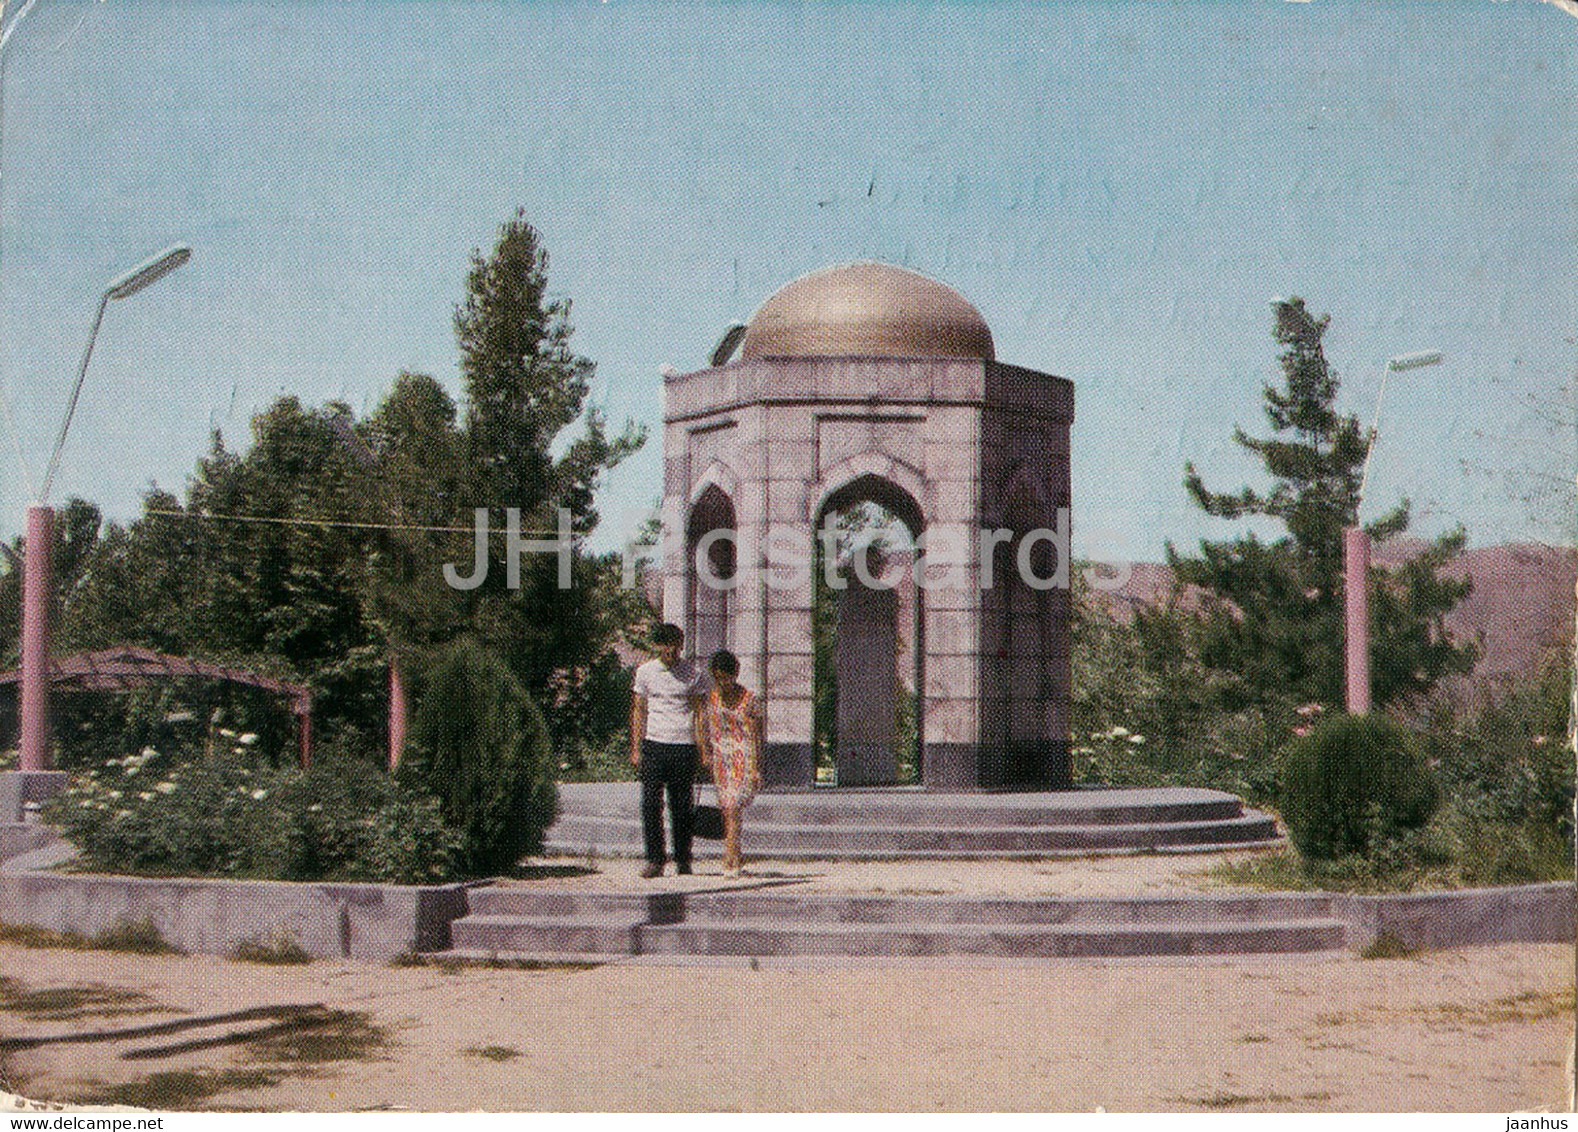 Dushanbe - Ayni Park - Postal Stationery - 1973 - Tajikistan USSR - Used - Tajikistan